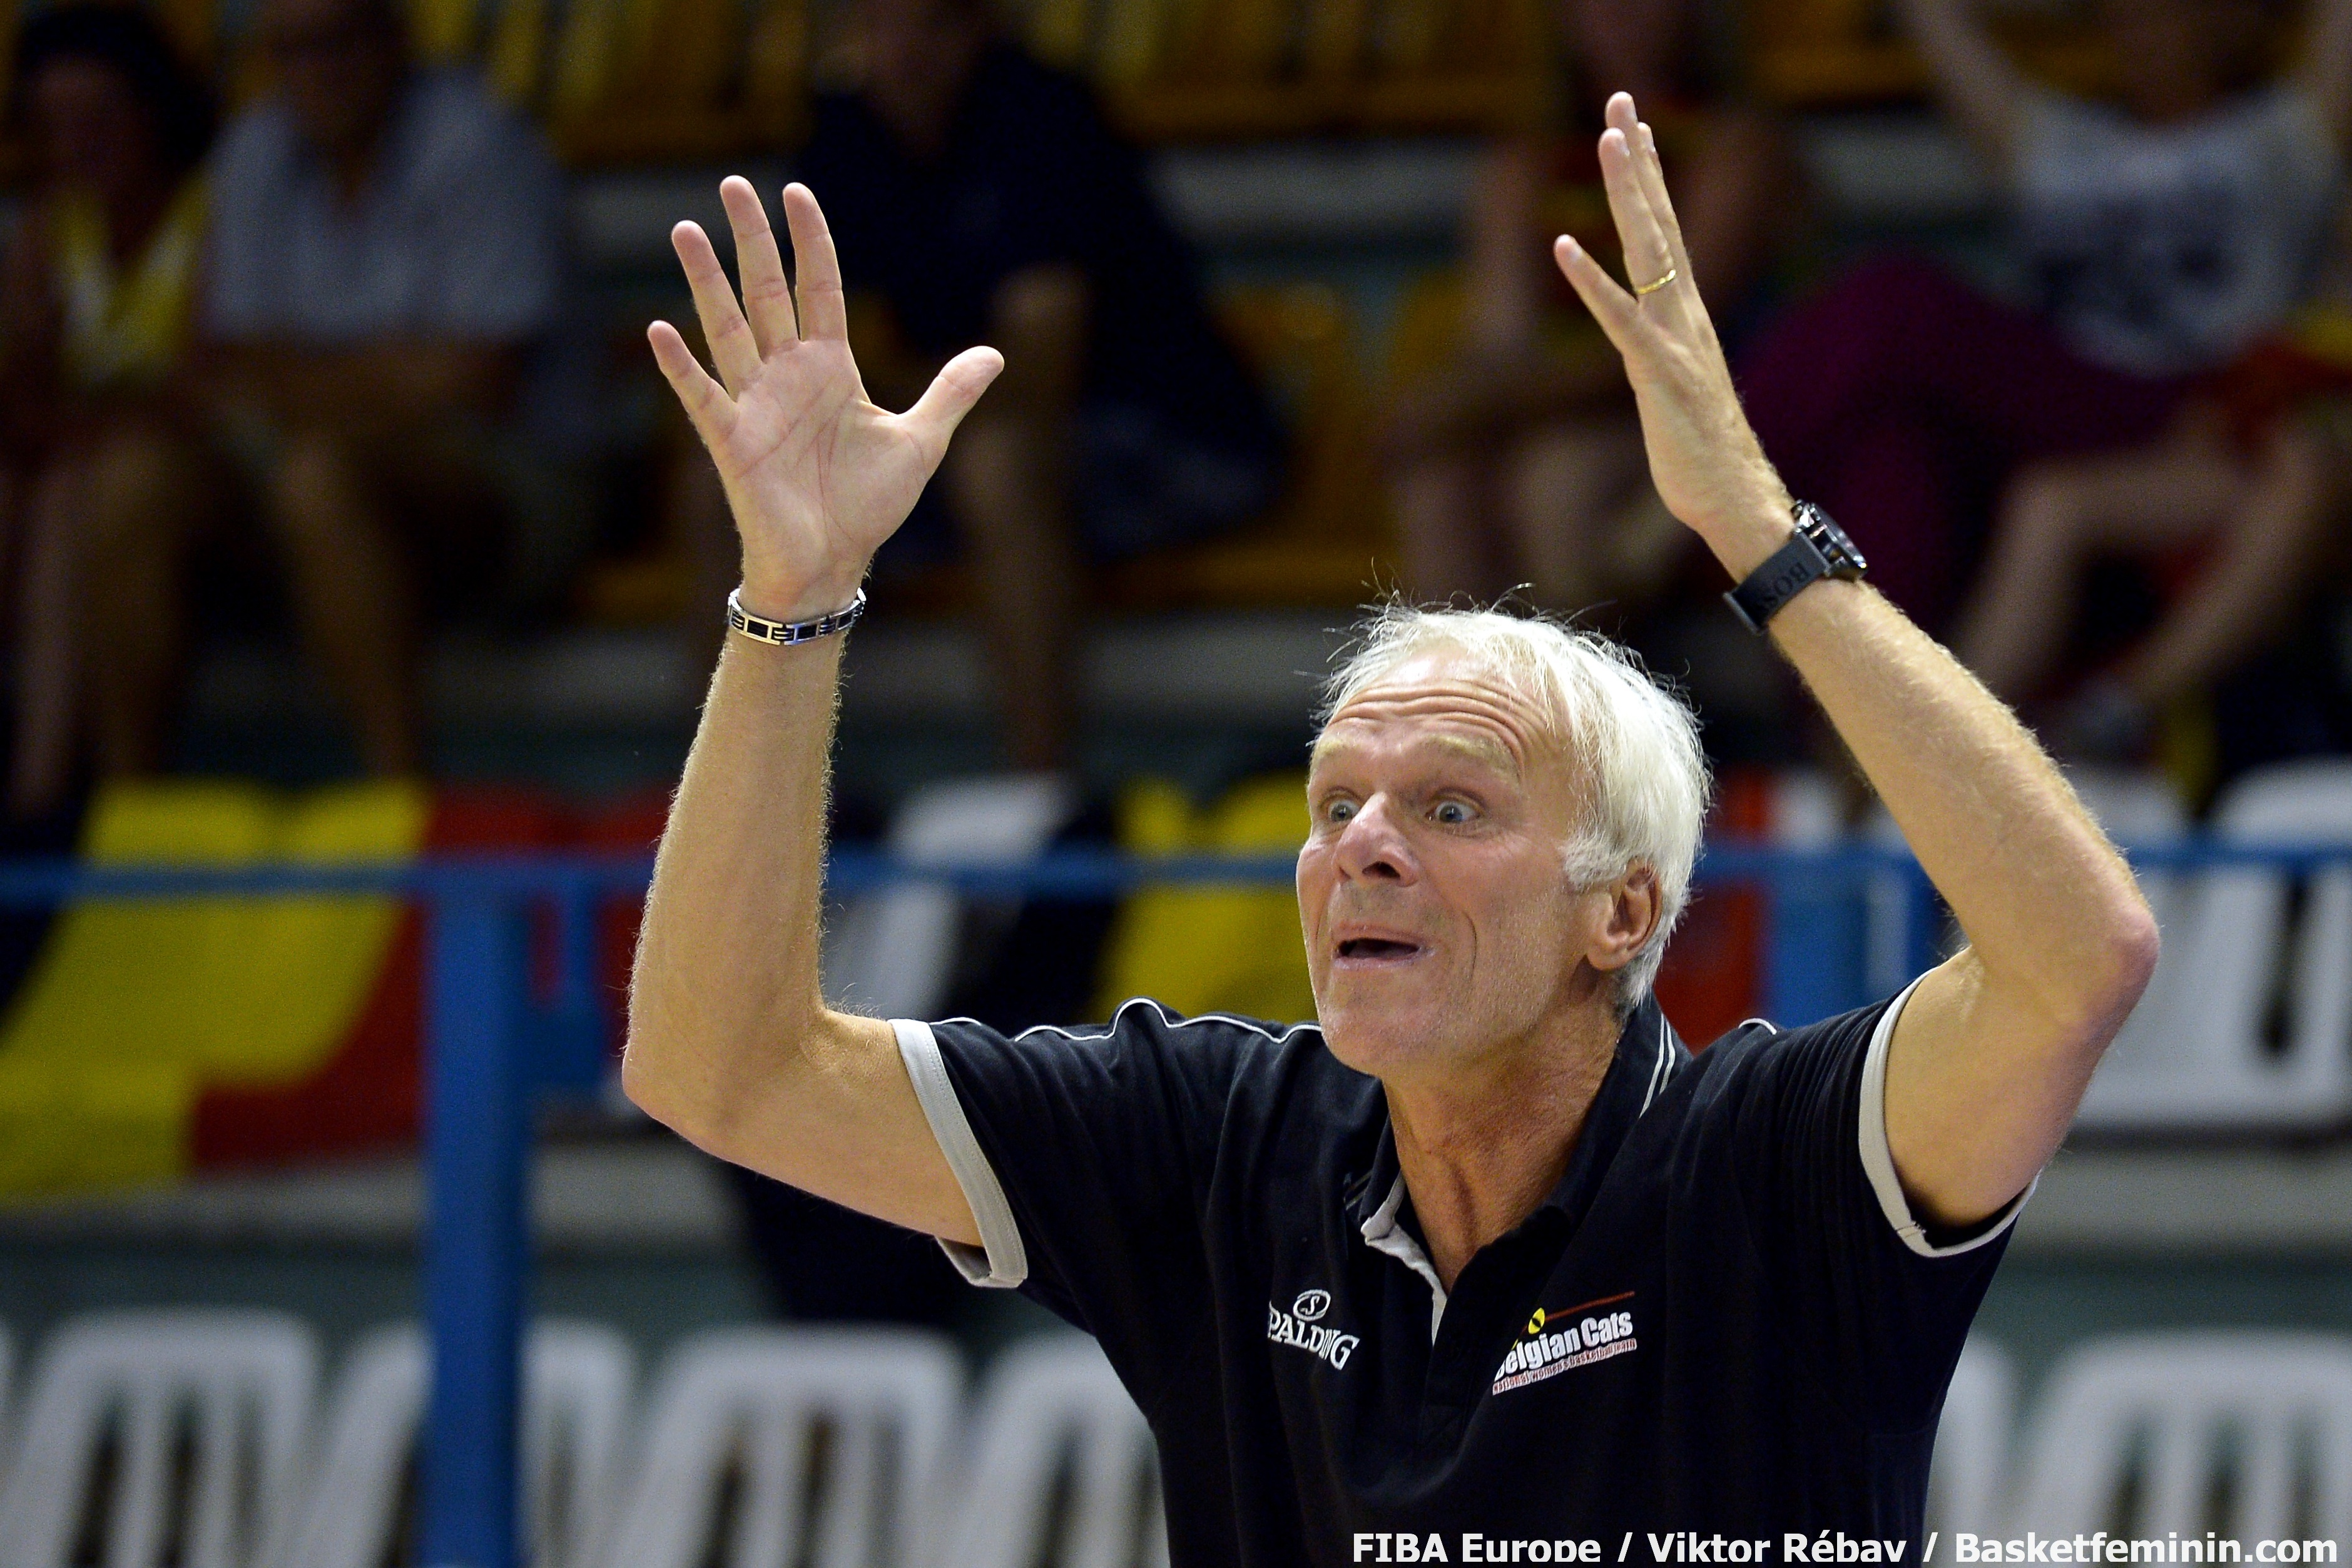 Pierre Cornia (photo: FIBA Europe/Viktor Rébay)